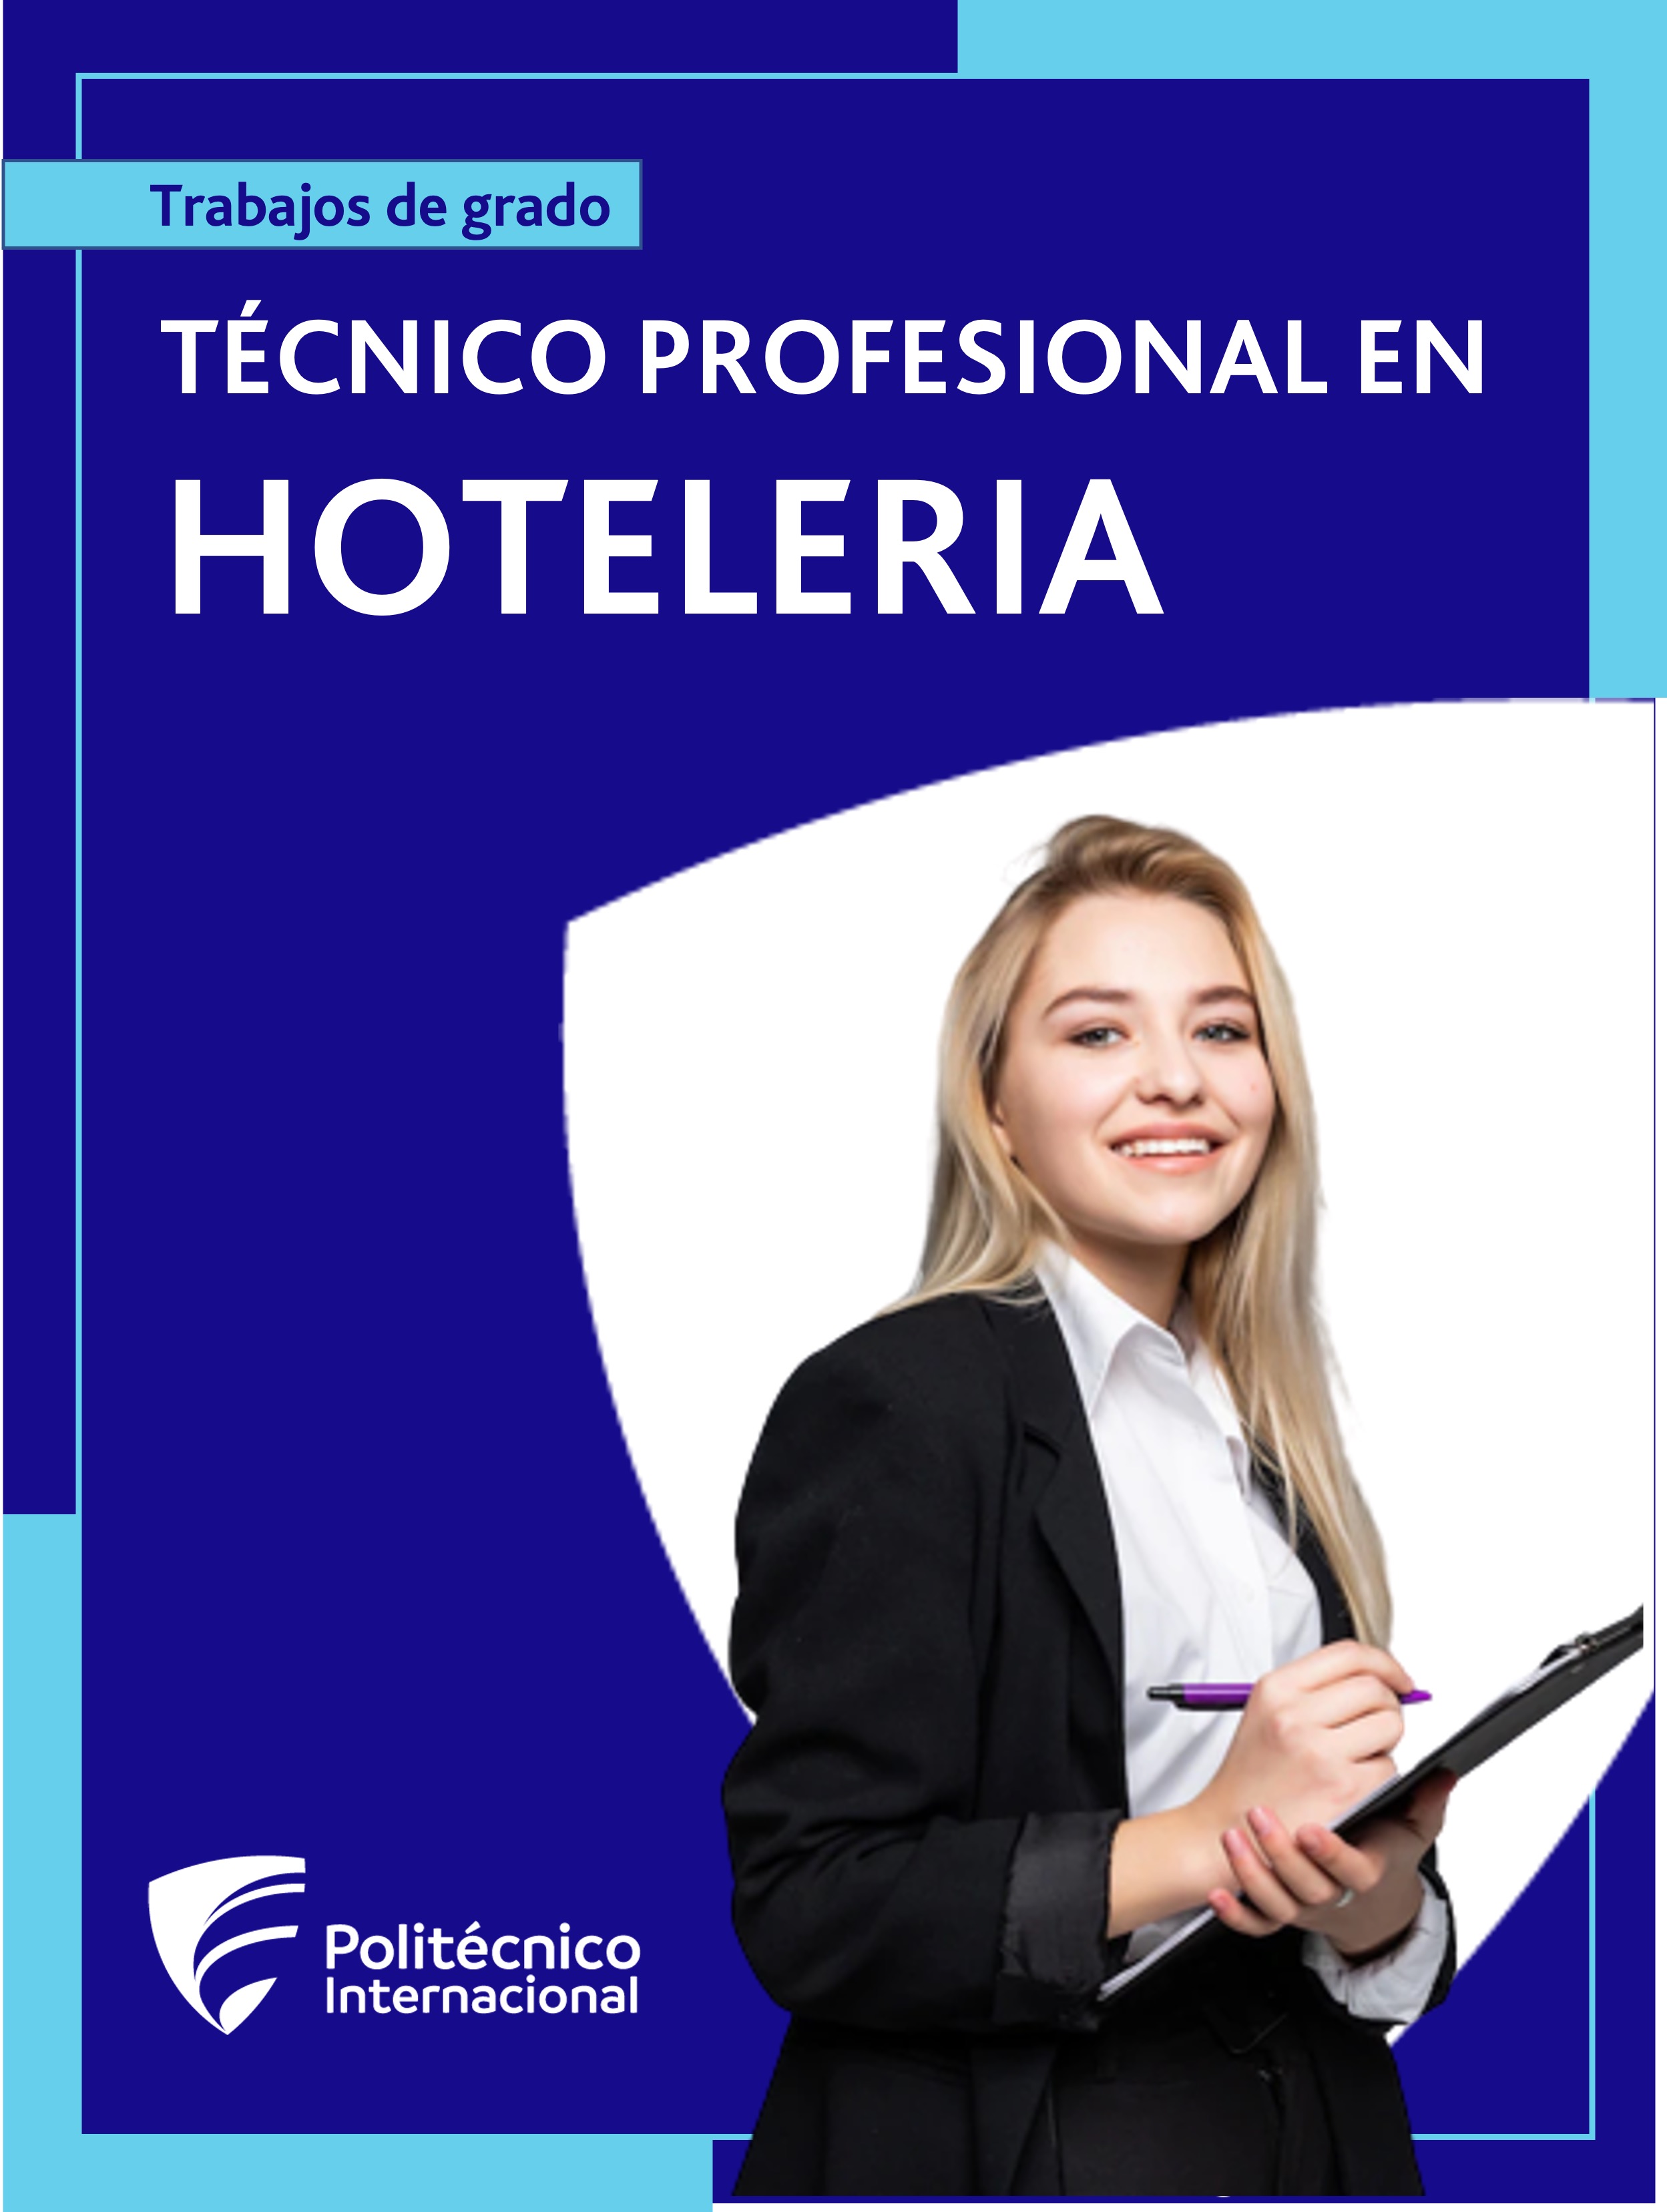 					Ver TP Hotelería
				